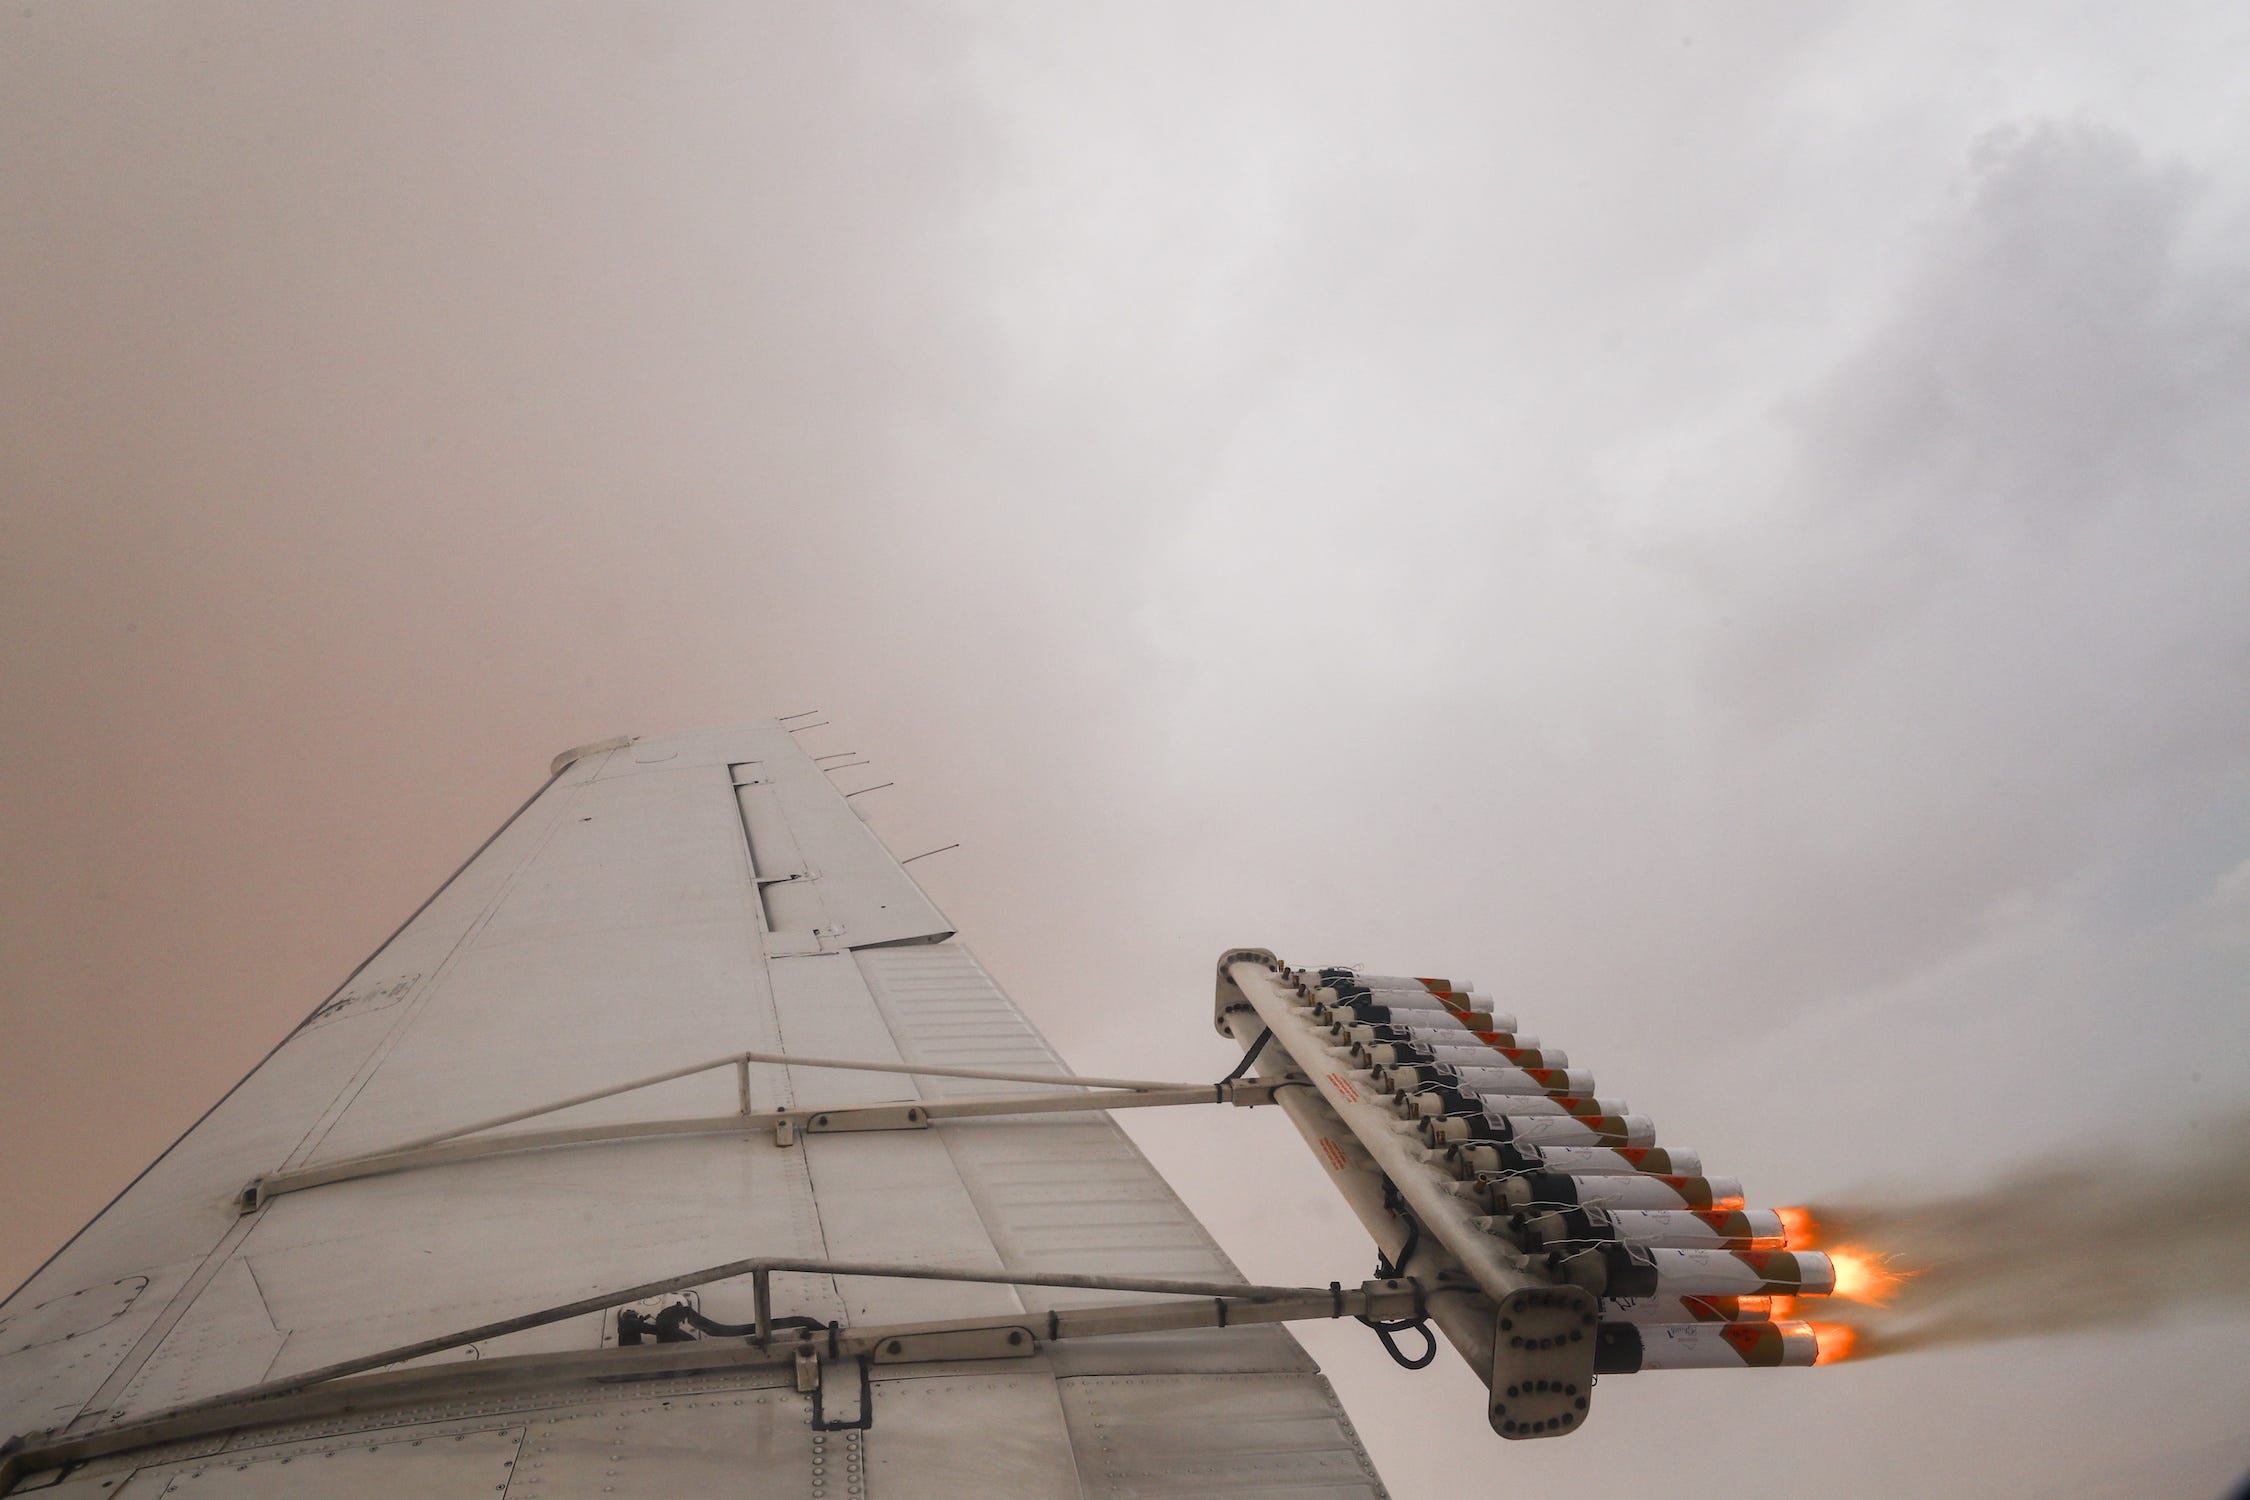 Flugzeugflügel mit einer Reihe von Rohren an der Rückseite, die Gas in einer dichten Wolke ausströmen lassen